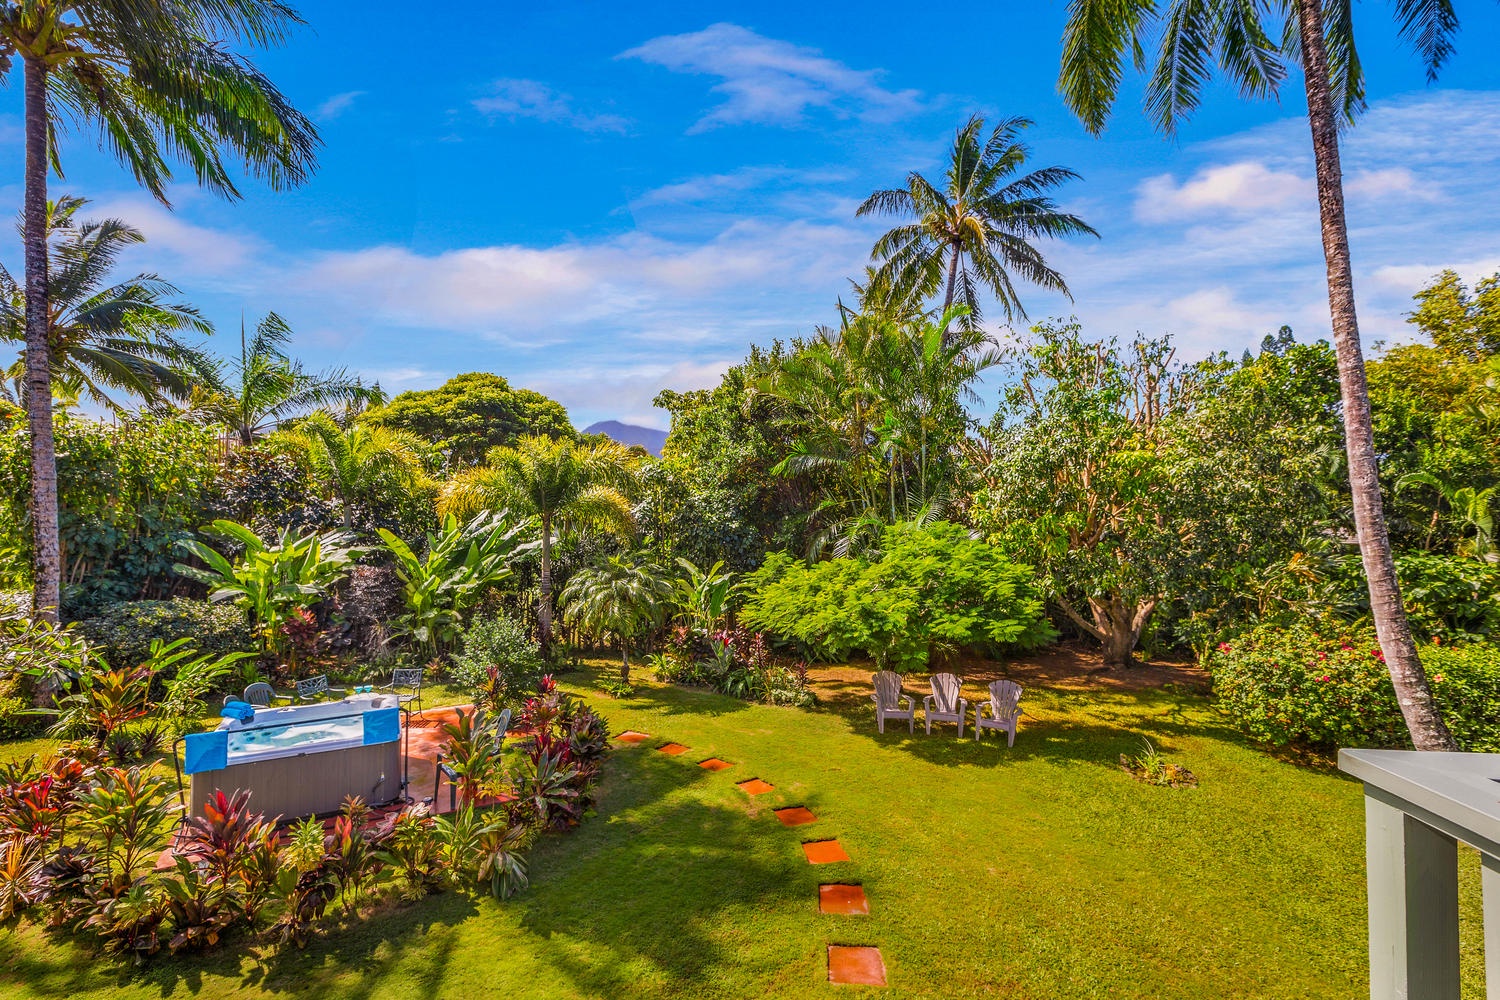 Princeville Vacation Rentals, Hale Anu Keanu - Beautiful garden view from upstairs lanai